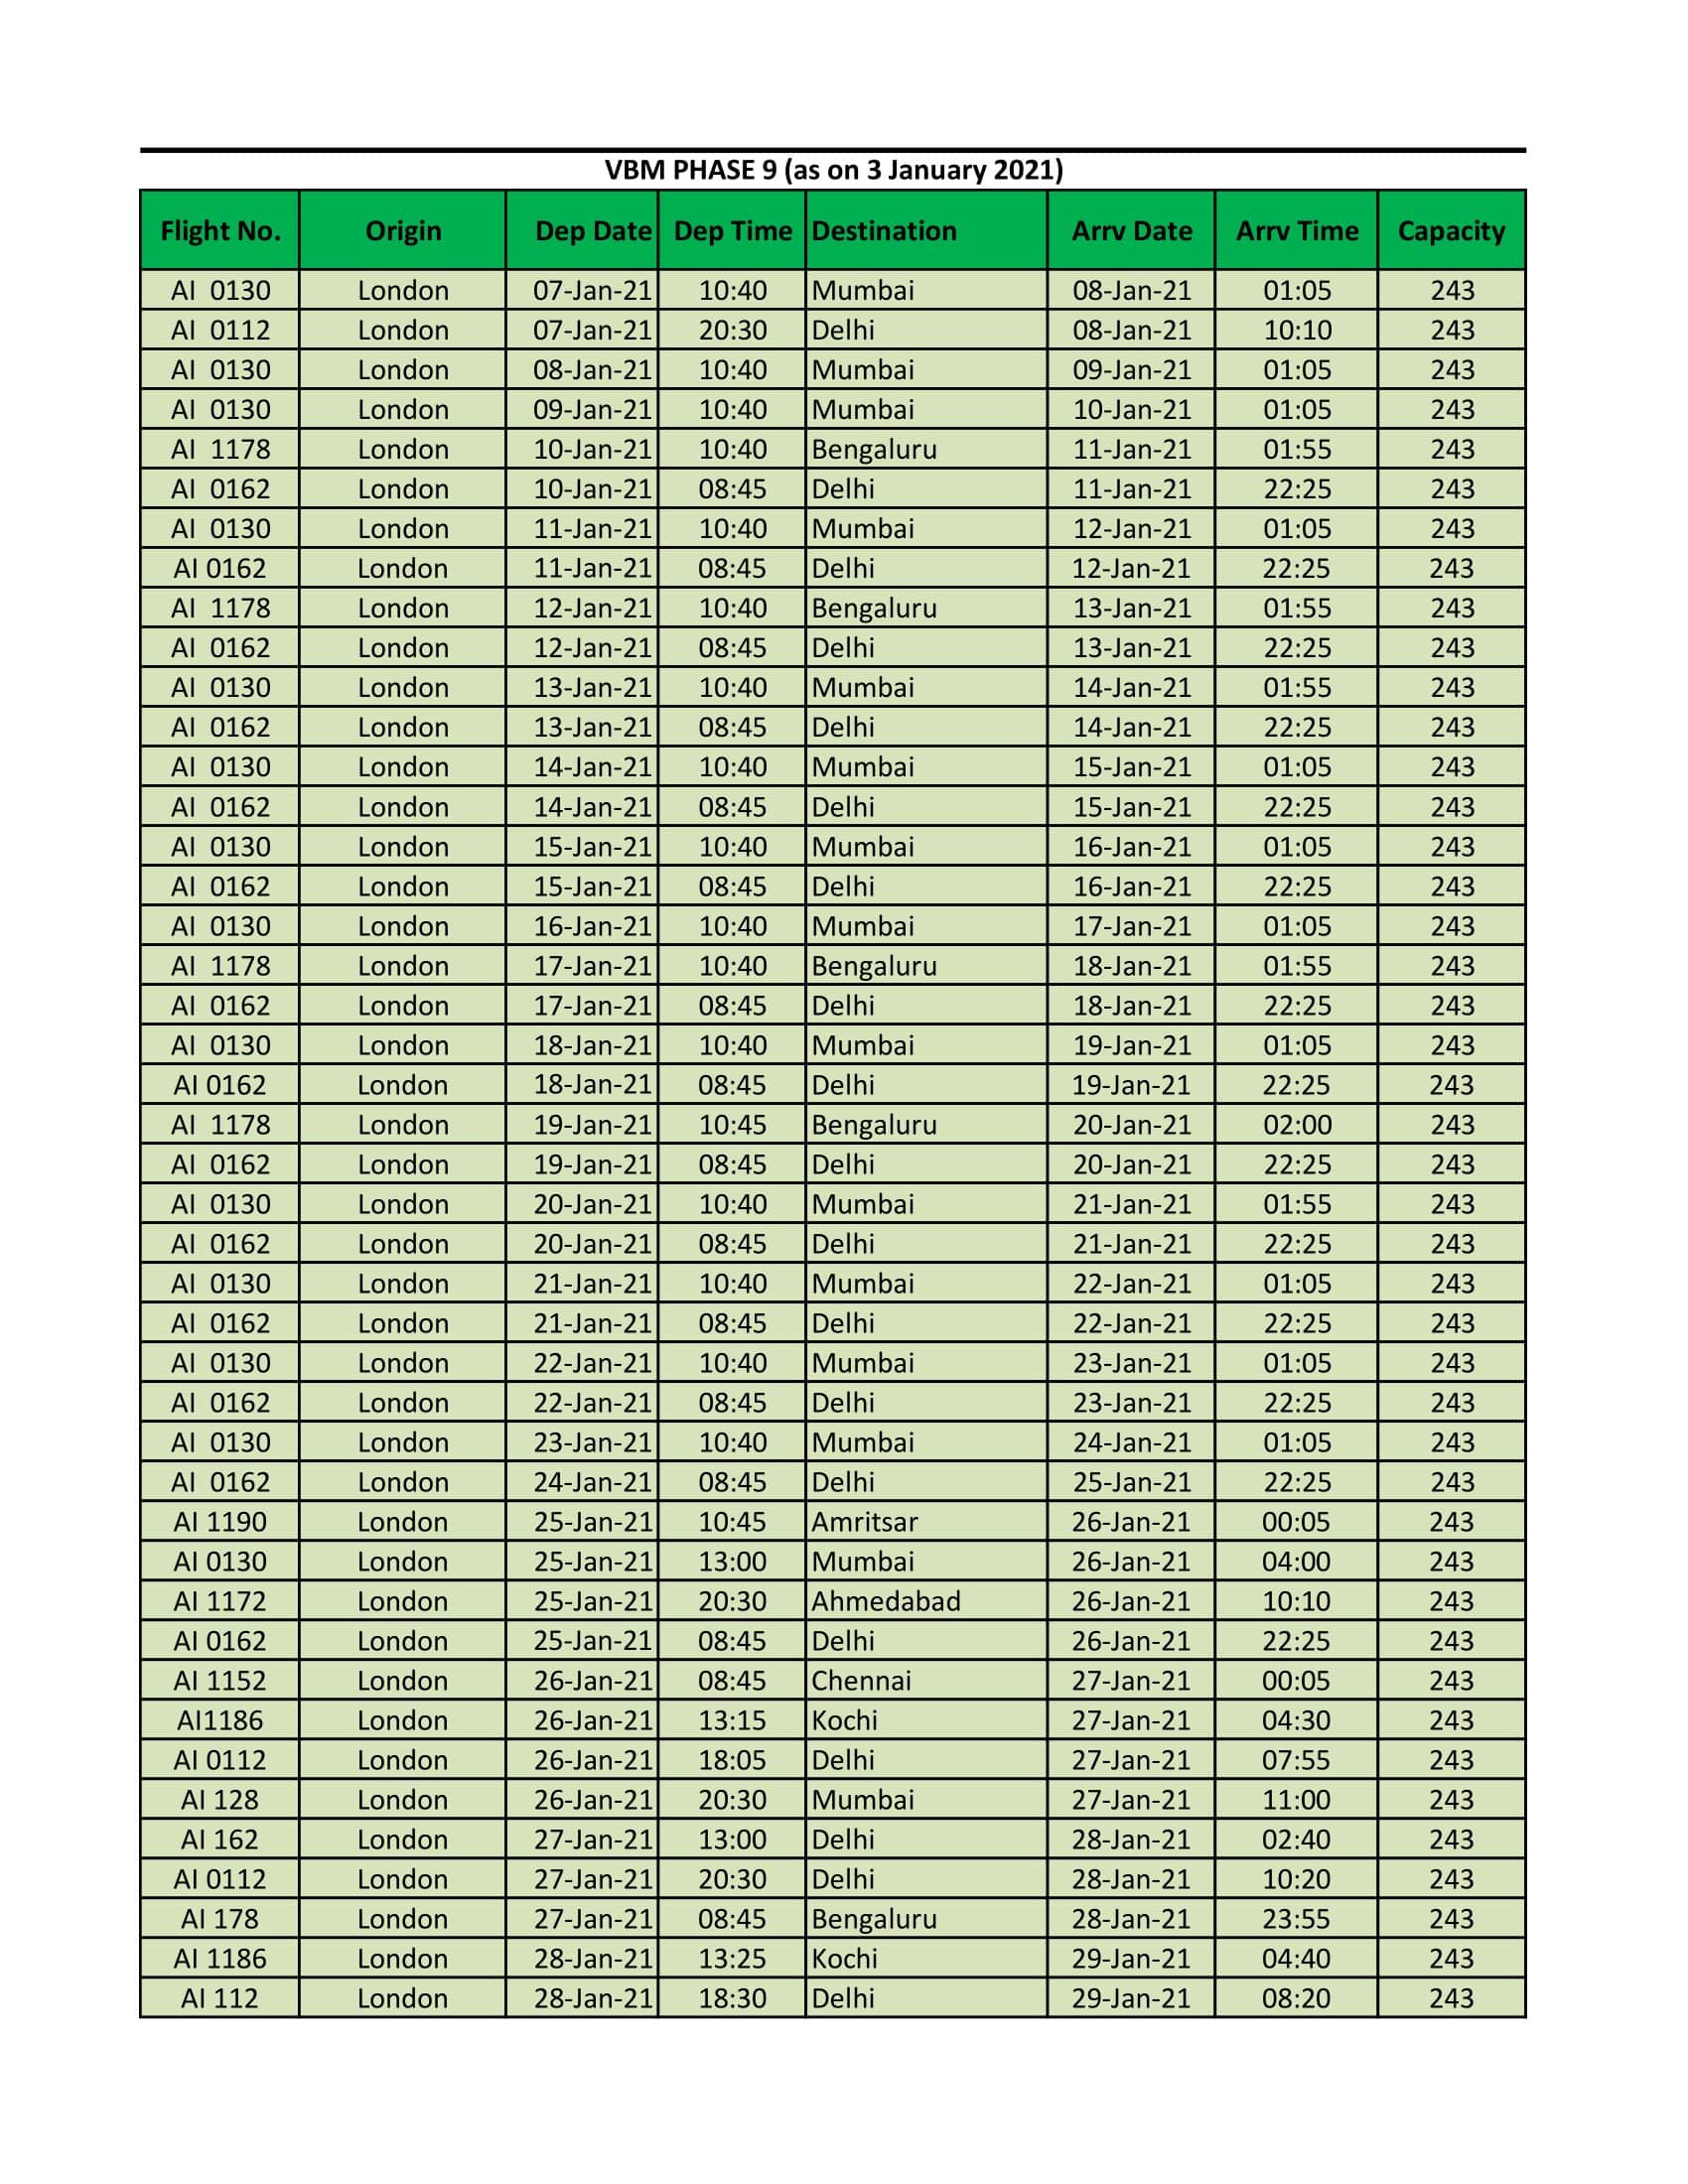 VBM Schedule 9- Flight schedule to India (7th Jan to 31st Jan 2021)